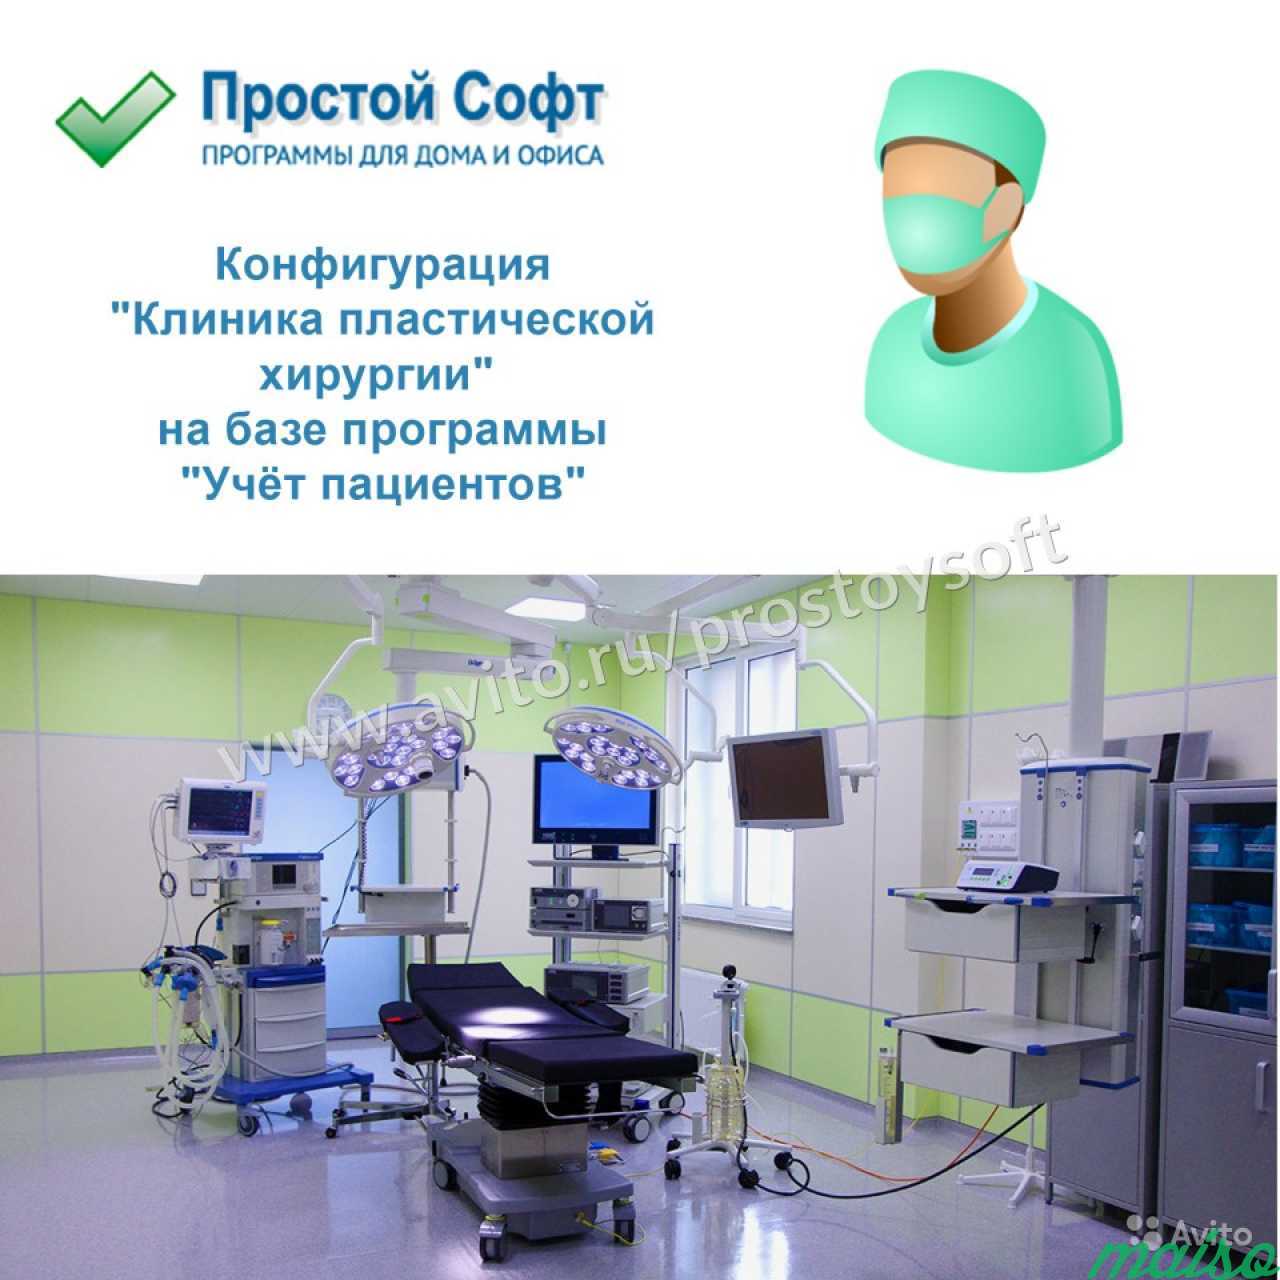 Конфигурация Клиника пластической хирургии в Санкт-Петербурге. Фото 1